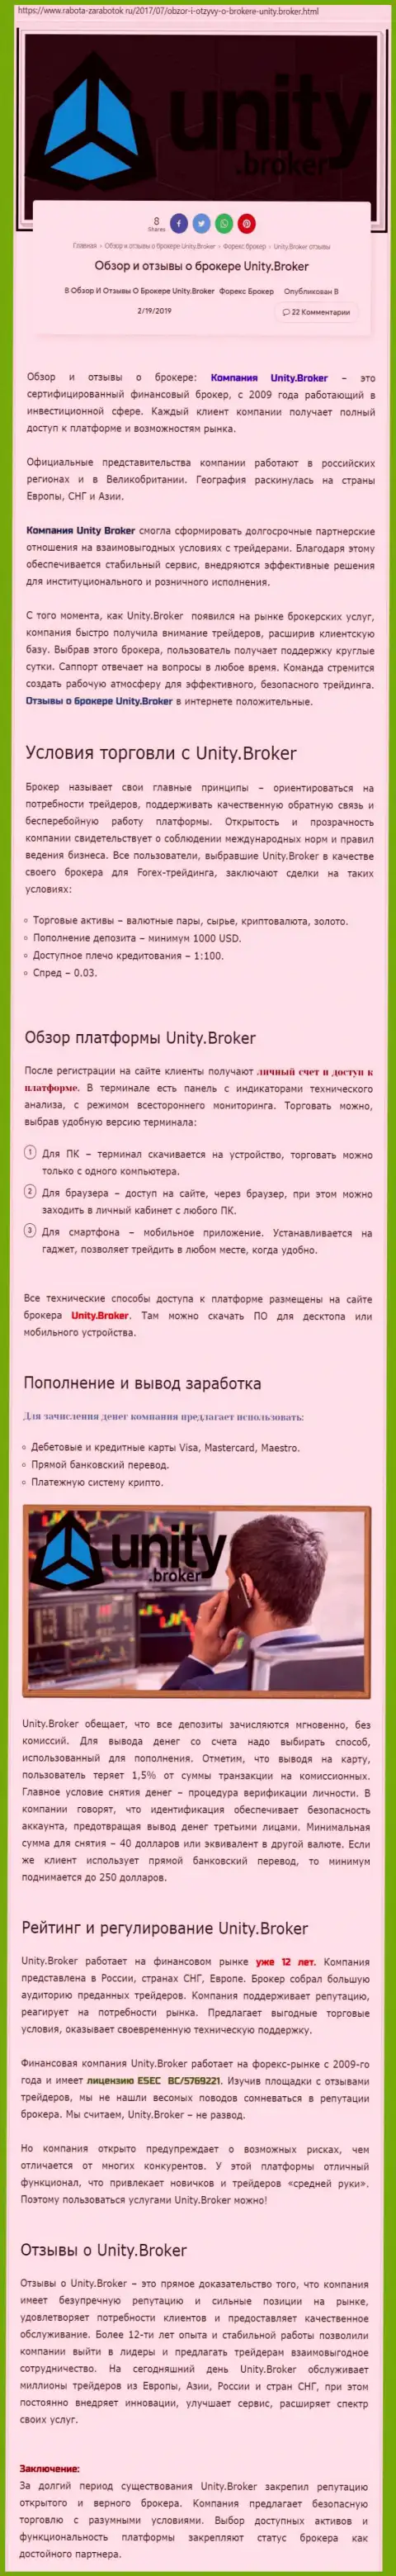 Обзорная информация Форекс дилера Unity Broker на интернет-ресурсе rabota zarabotok ru